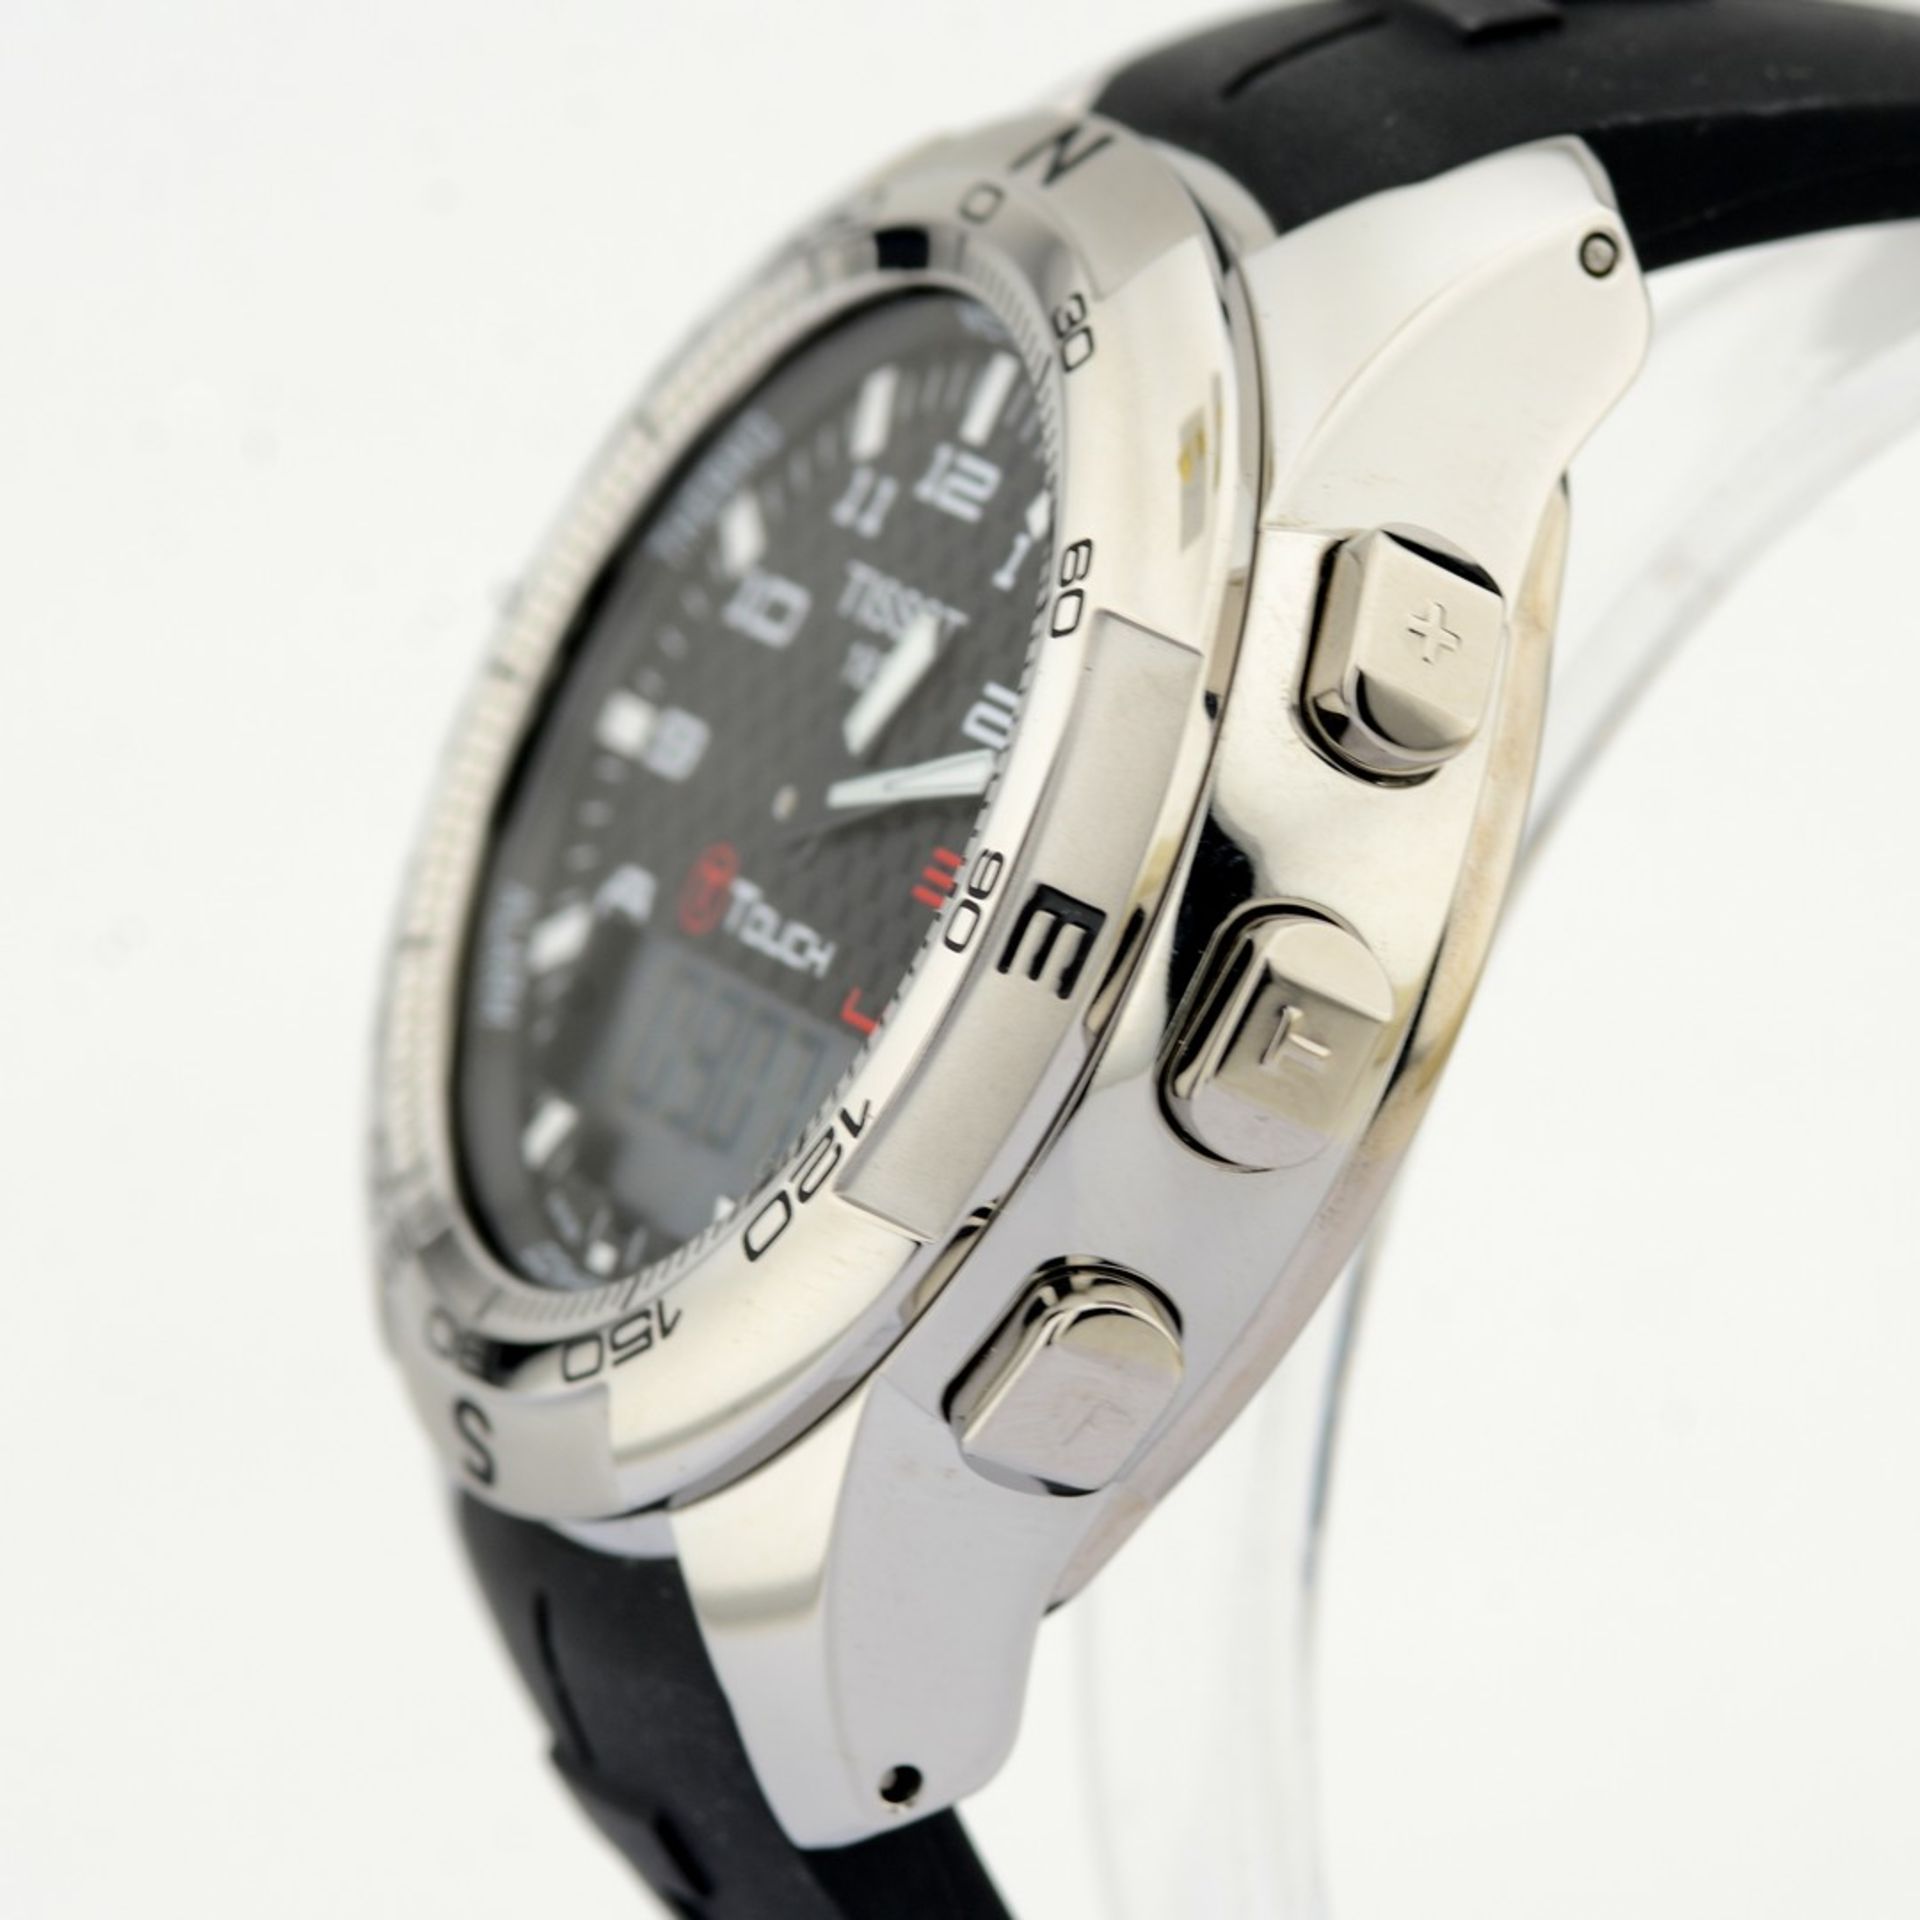 Tissot / T-Touch II Smart (New) - Gentlmen's Steel Wrist Watch - Image 7 of 12